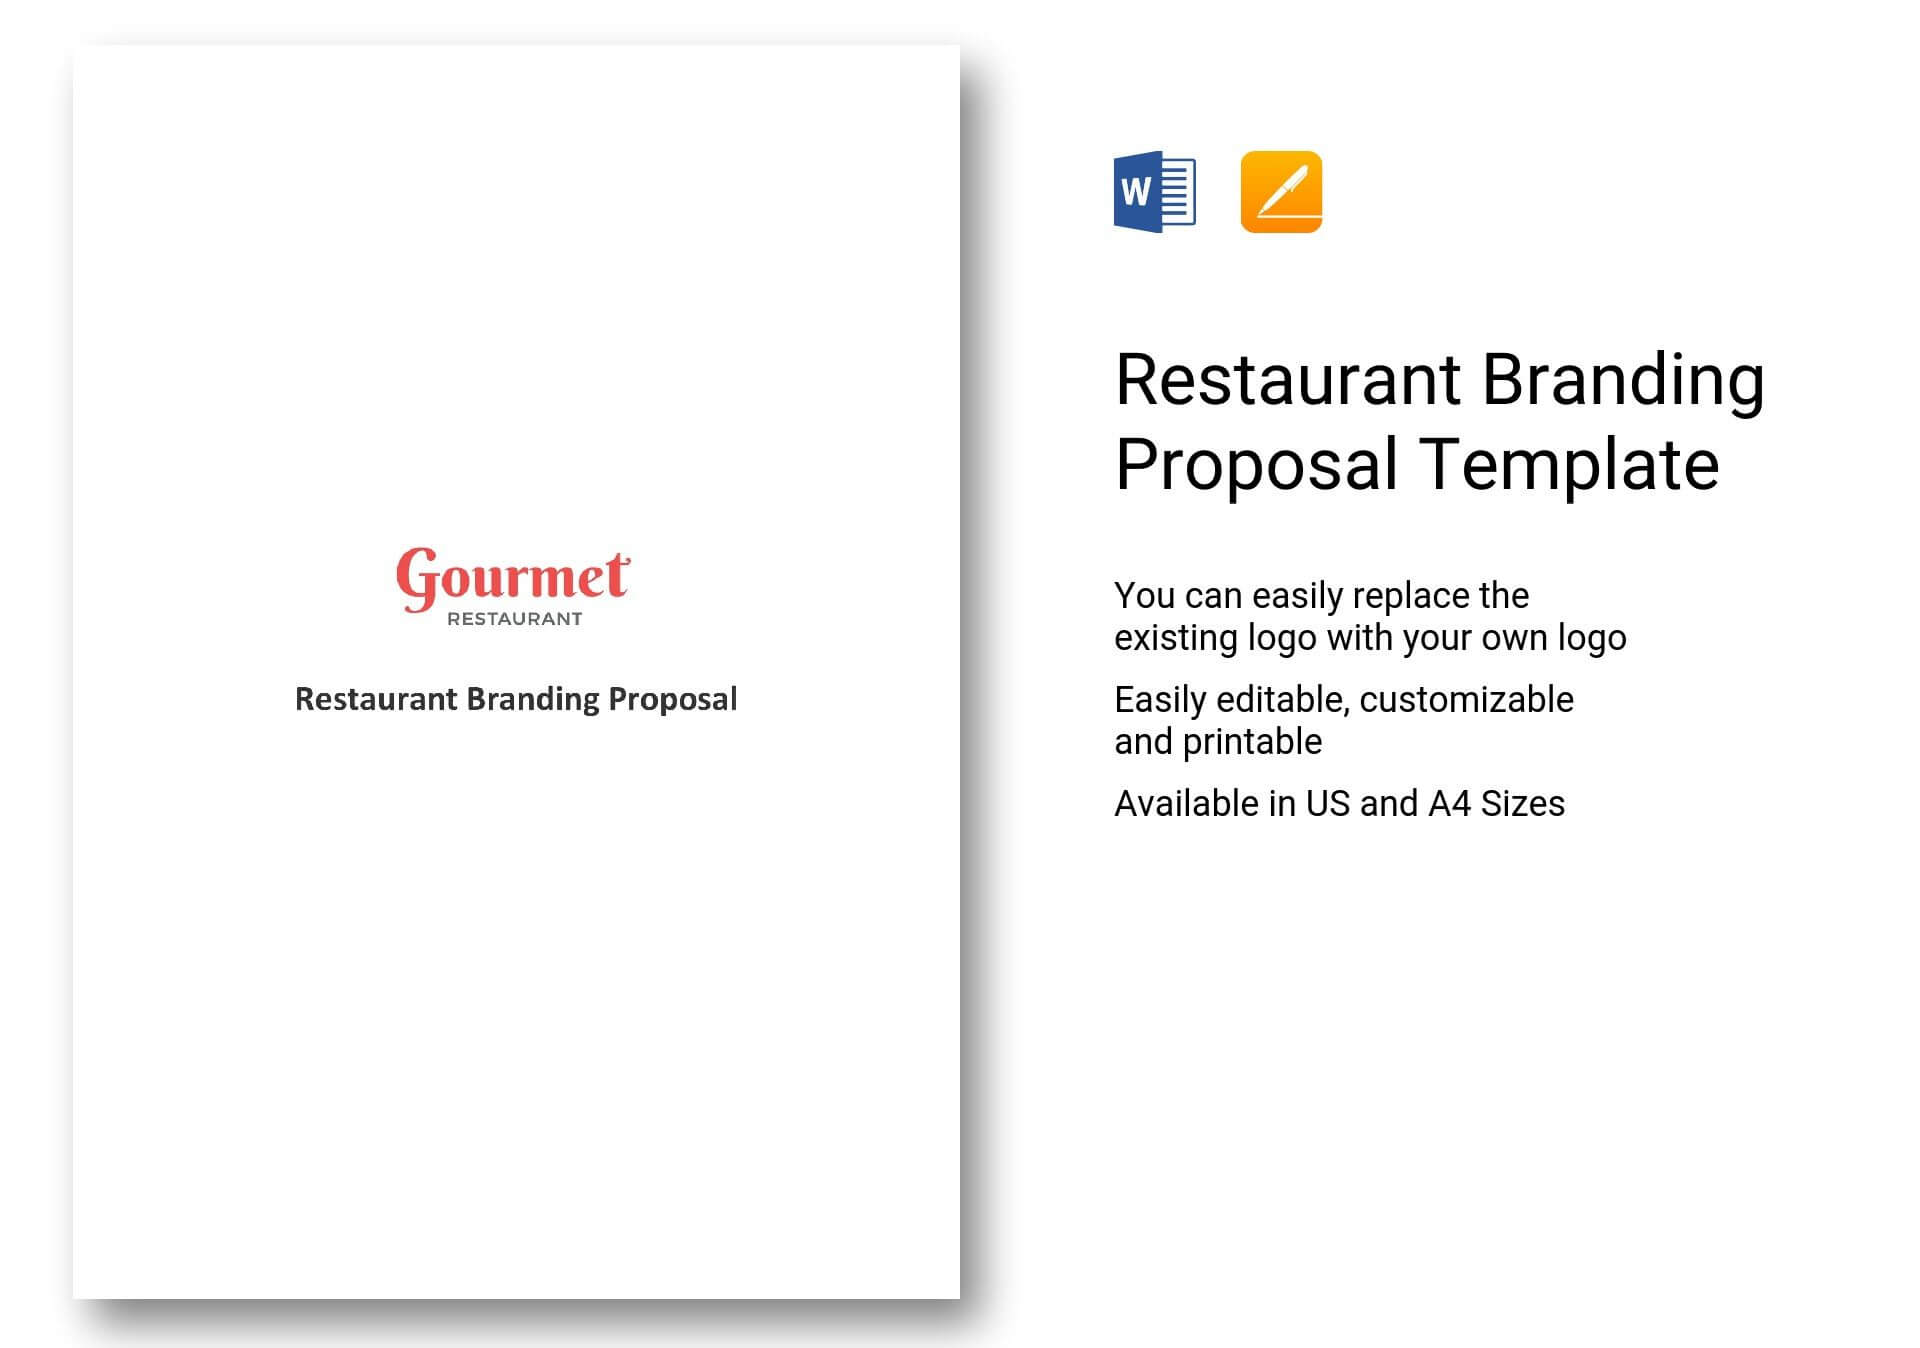 Restaurant Branding Proposal Template In Word, Apple Pages In Branding Proposal Template